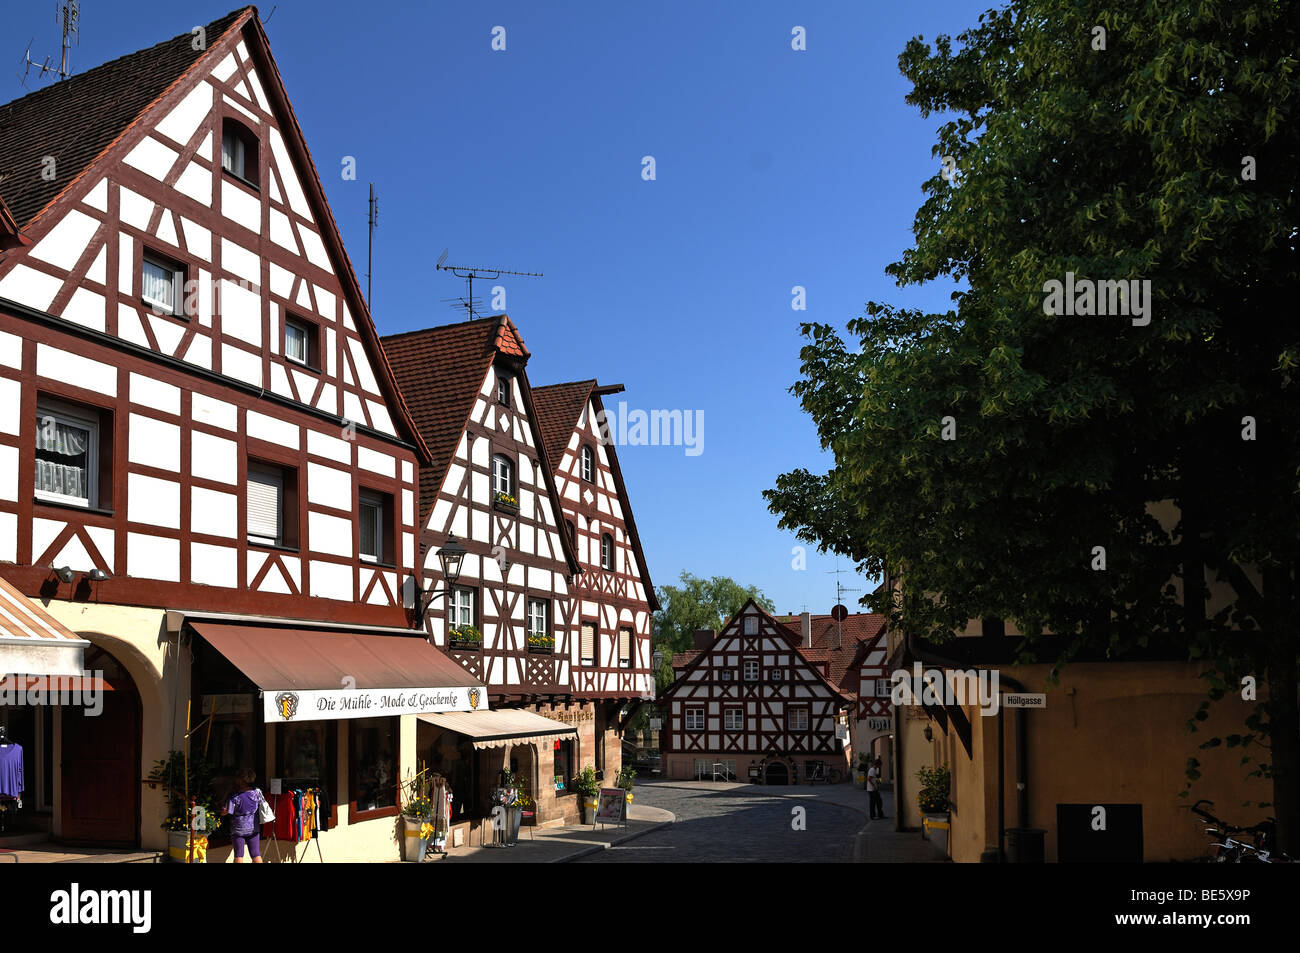 Vieille rue avec maisons à colombage franconien, gunzenhausen, Middle Franconia, Bavaria, Germany, Europe Banque D'Images